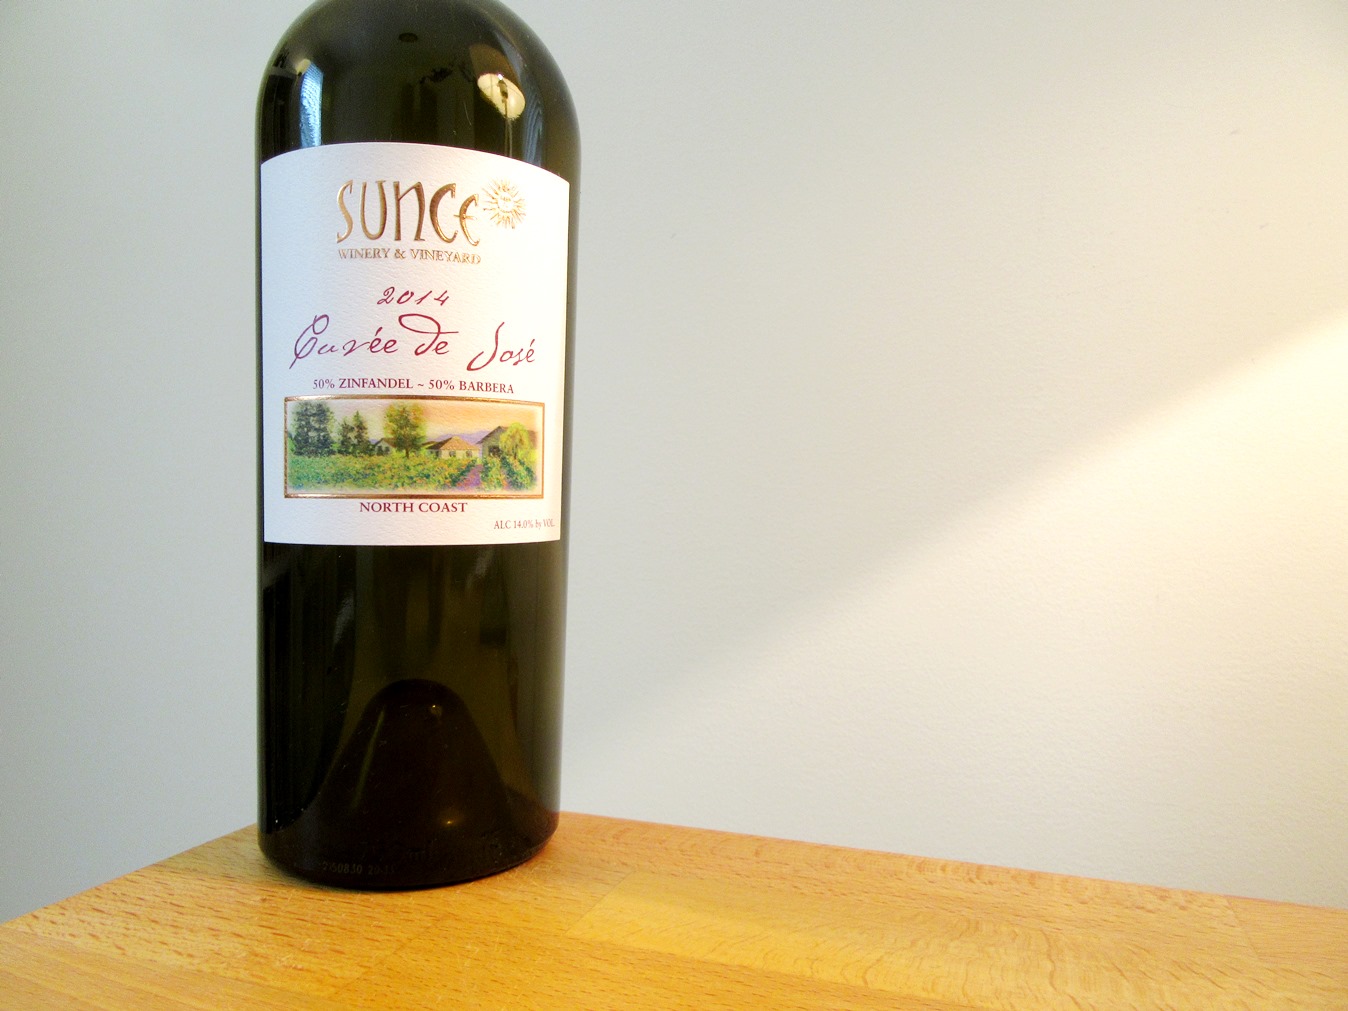 Sunce Winery & Vineyard, Cuvée de José 2014, North Coast, California. Wine Casual